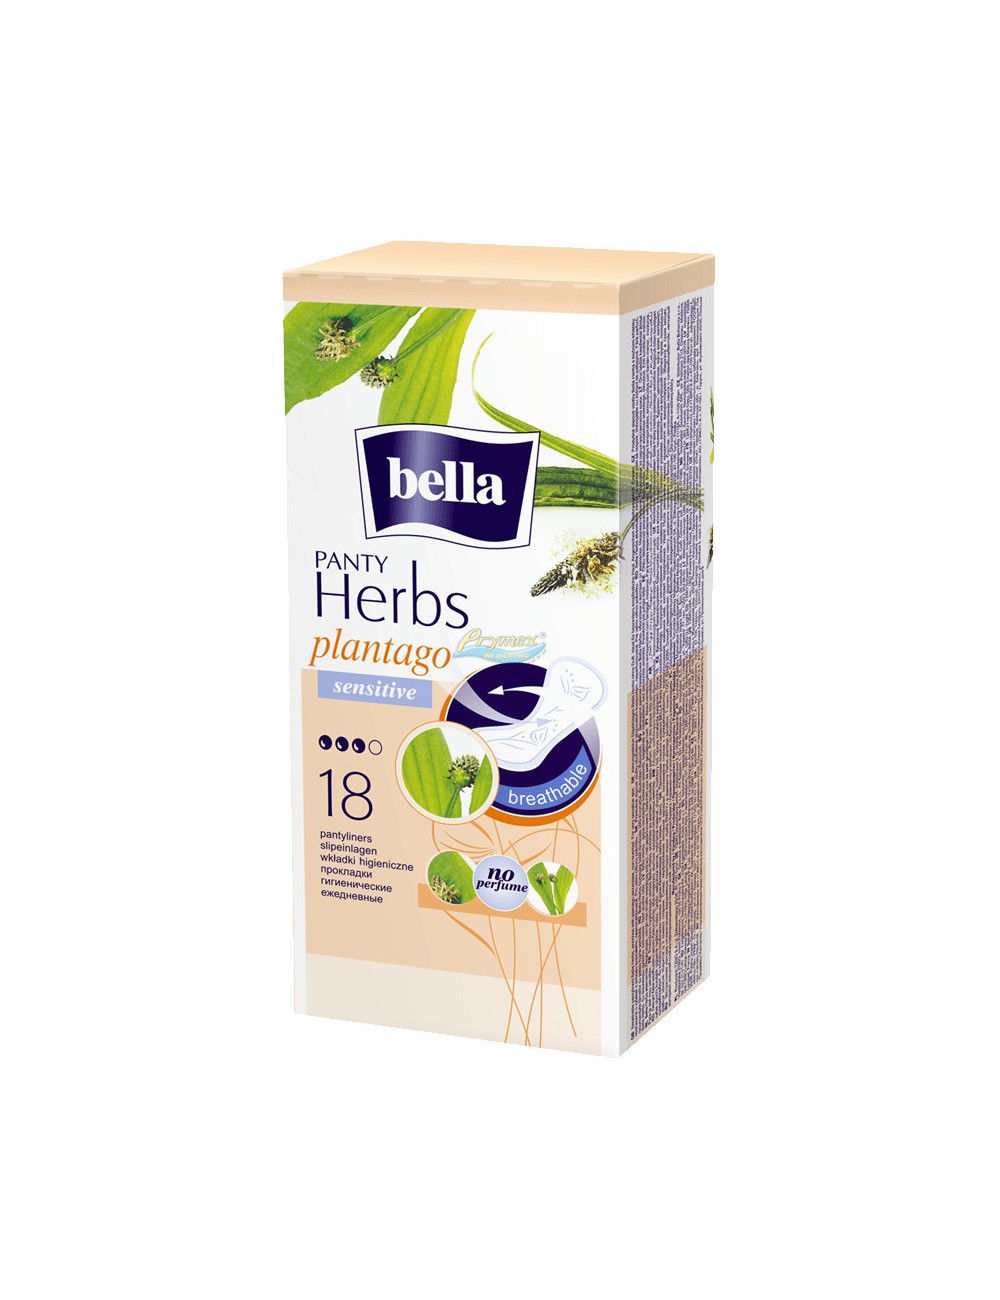 Bella Panty Herbs Plantago Sensitive Babka Lancetowata Wkładki Higieniczne 18 szt